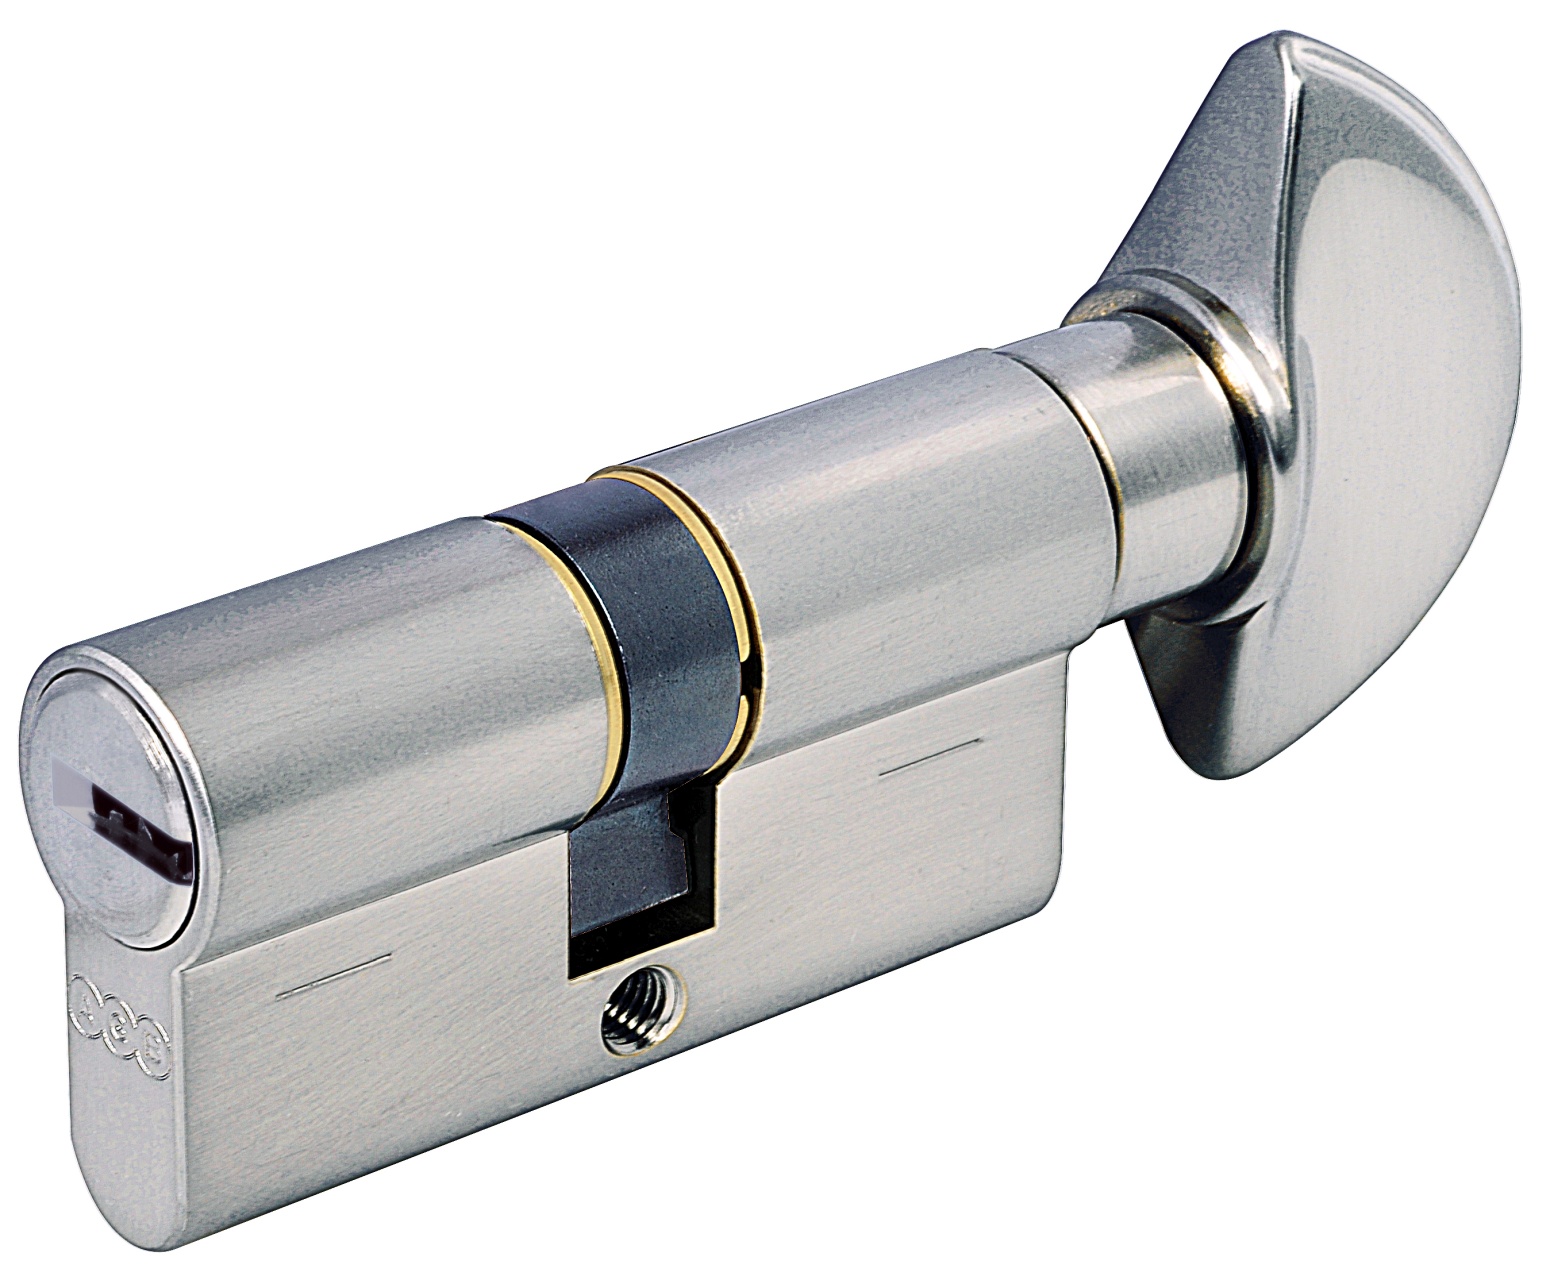 AGB -  Cilindro SCUDO 5000 PS frizionato anti bamping con chiave e pomolo - col. NICHELATO OPACO - lunghezza 85 - misura P-35-10-40